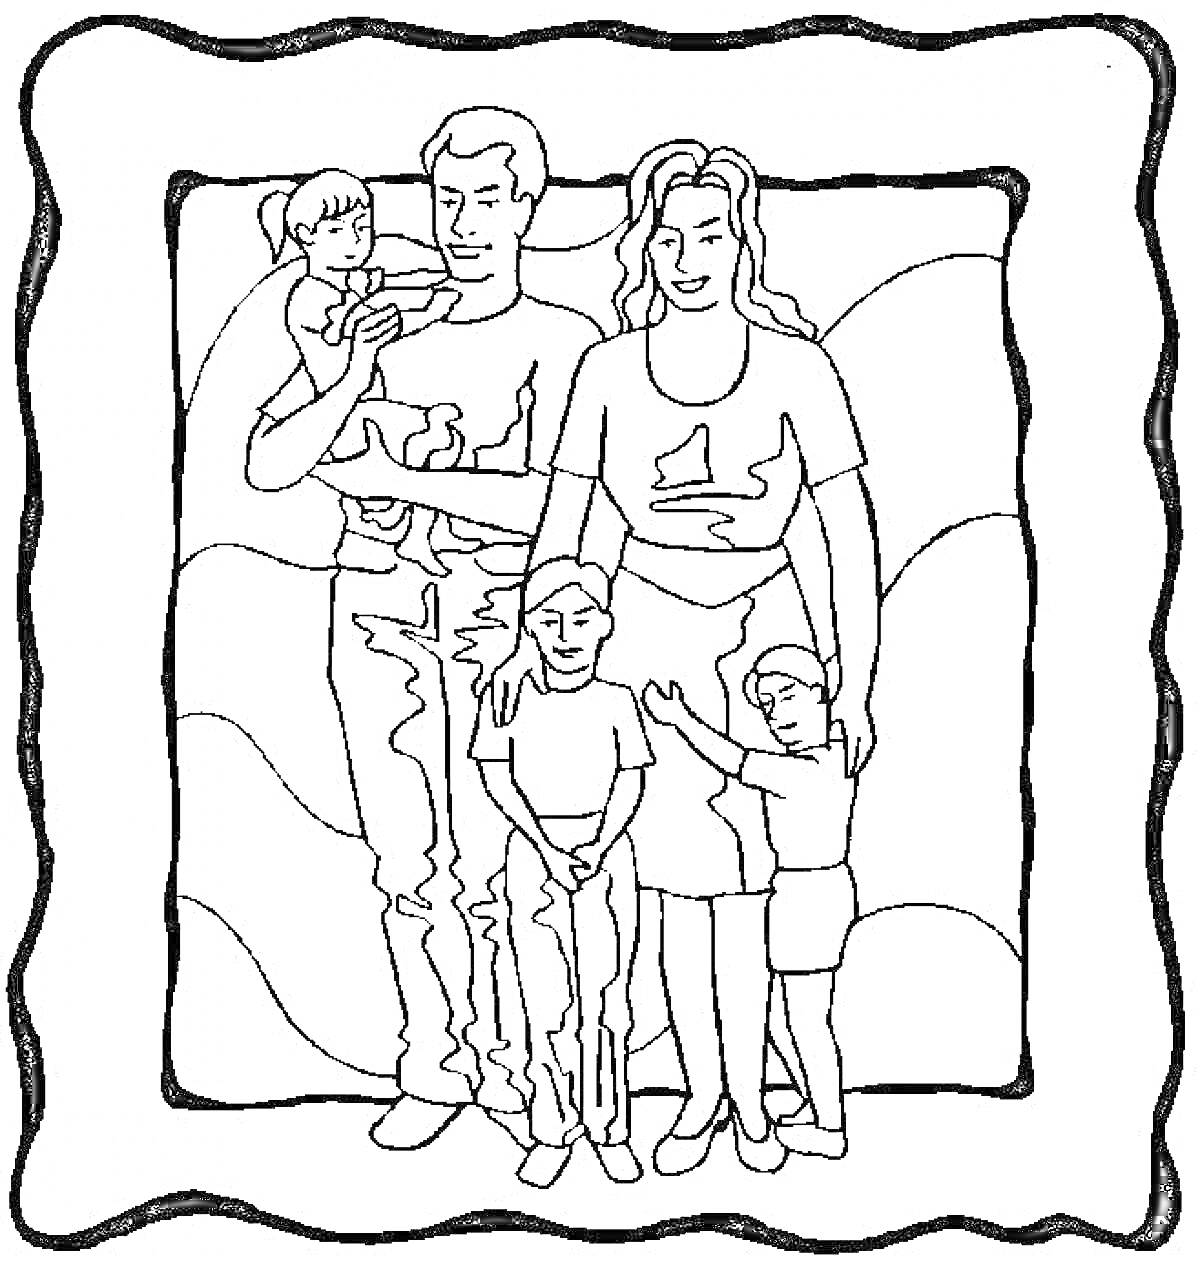 Семейный портрет с пятью членами семьи, включая двух взрослых и троих детей в рамке